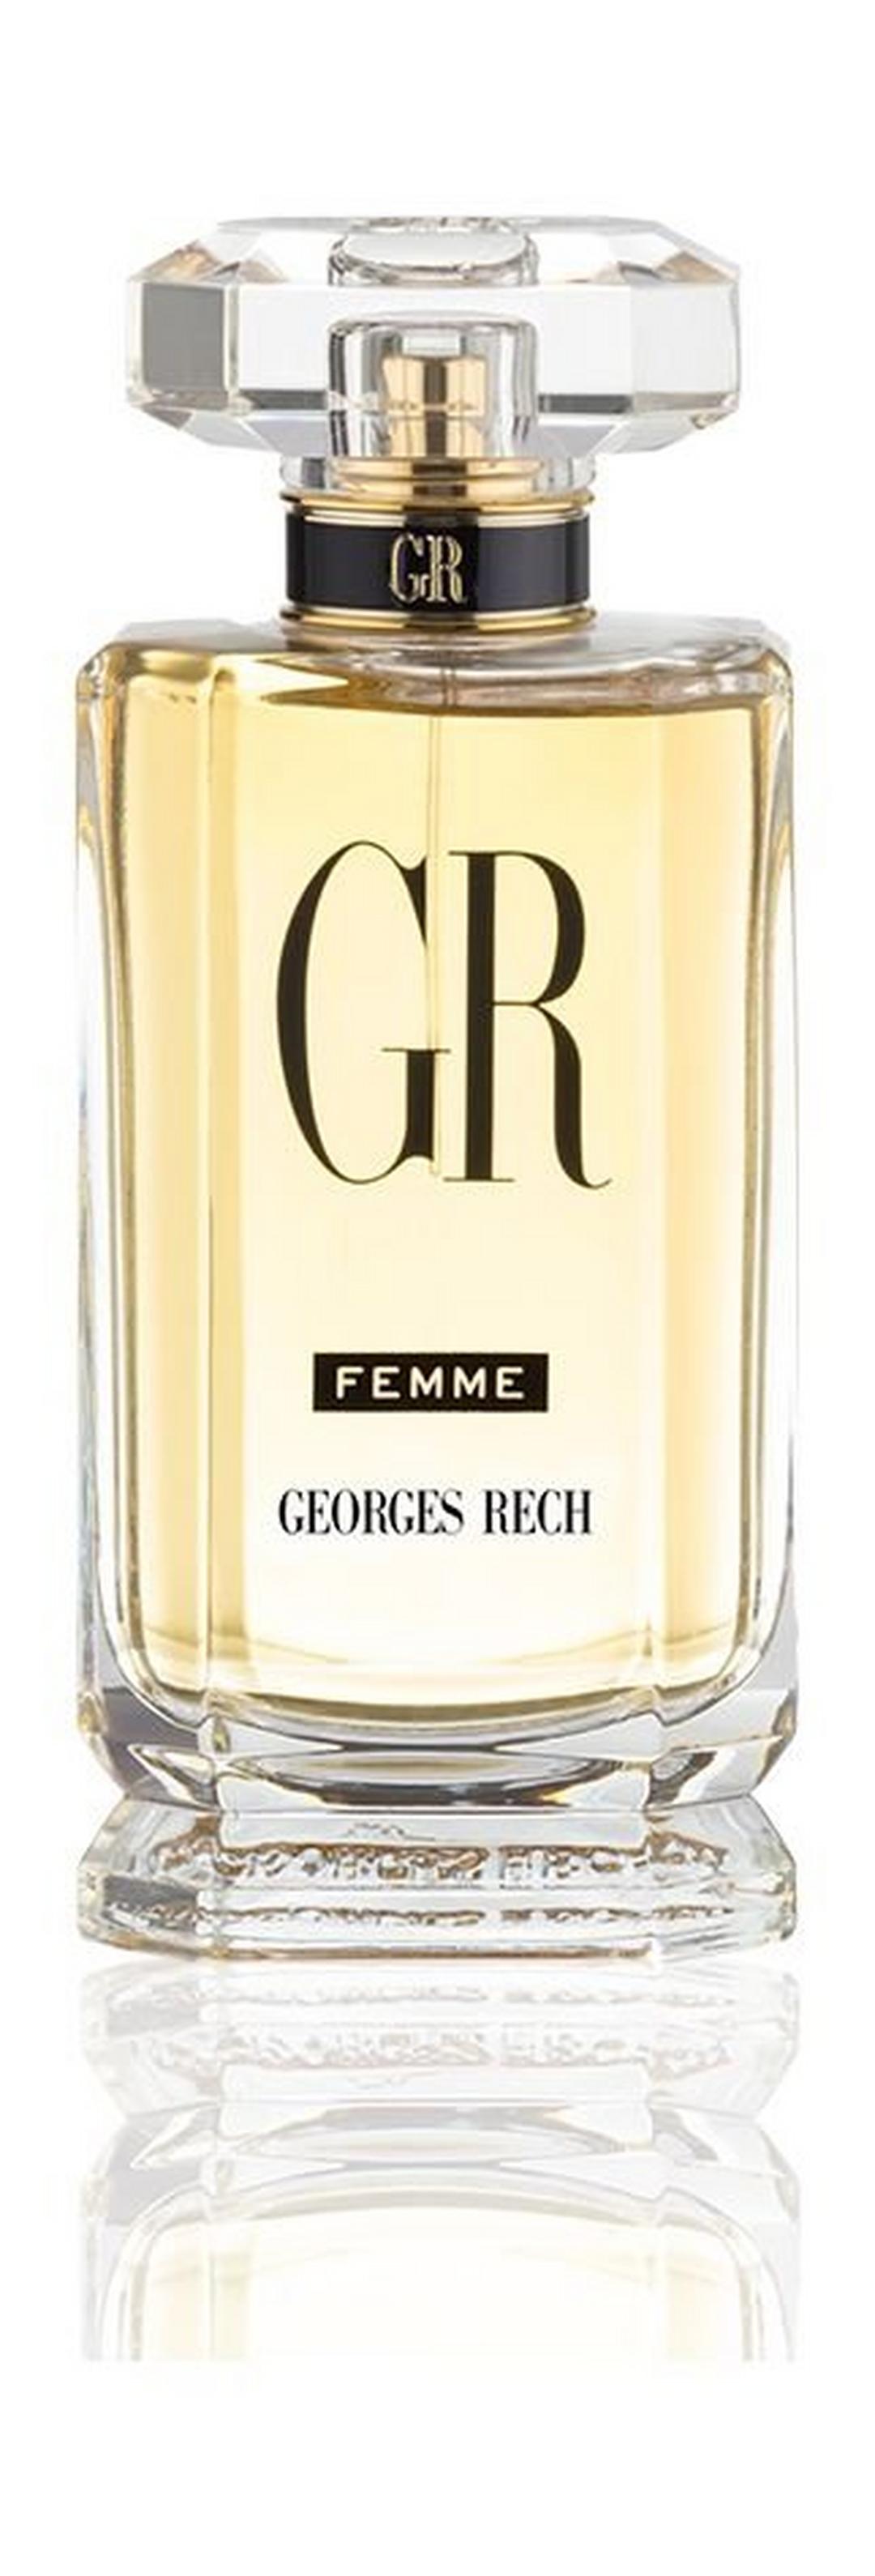 Georges Rech Femme 100ml Eau de Parfum